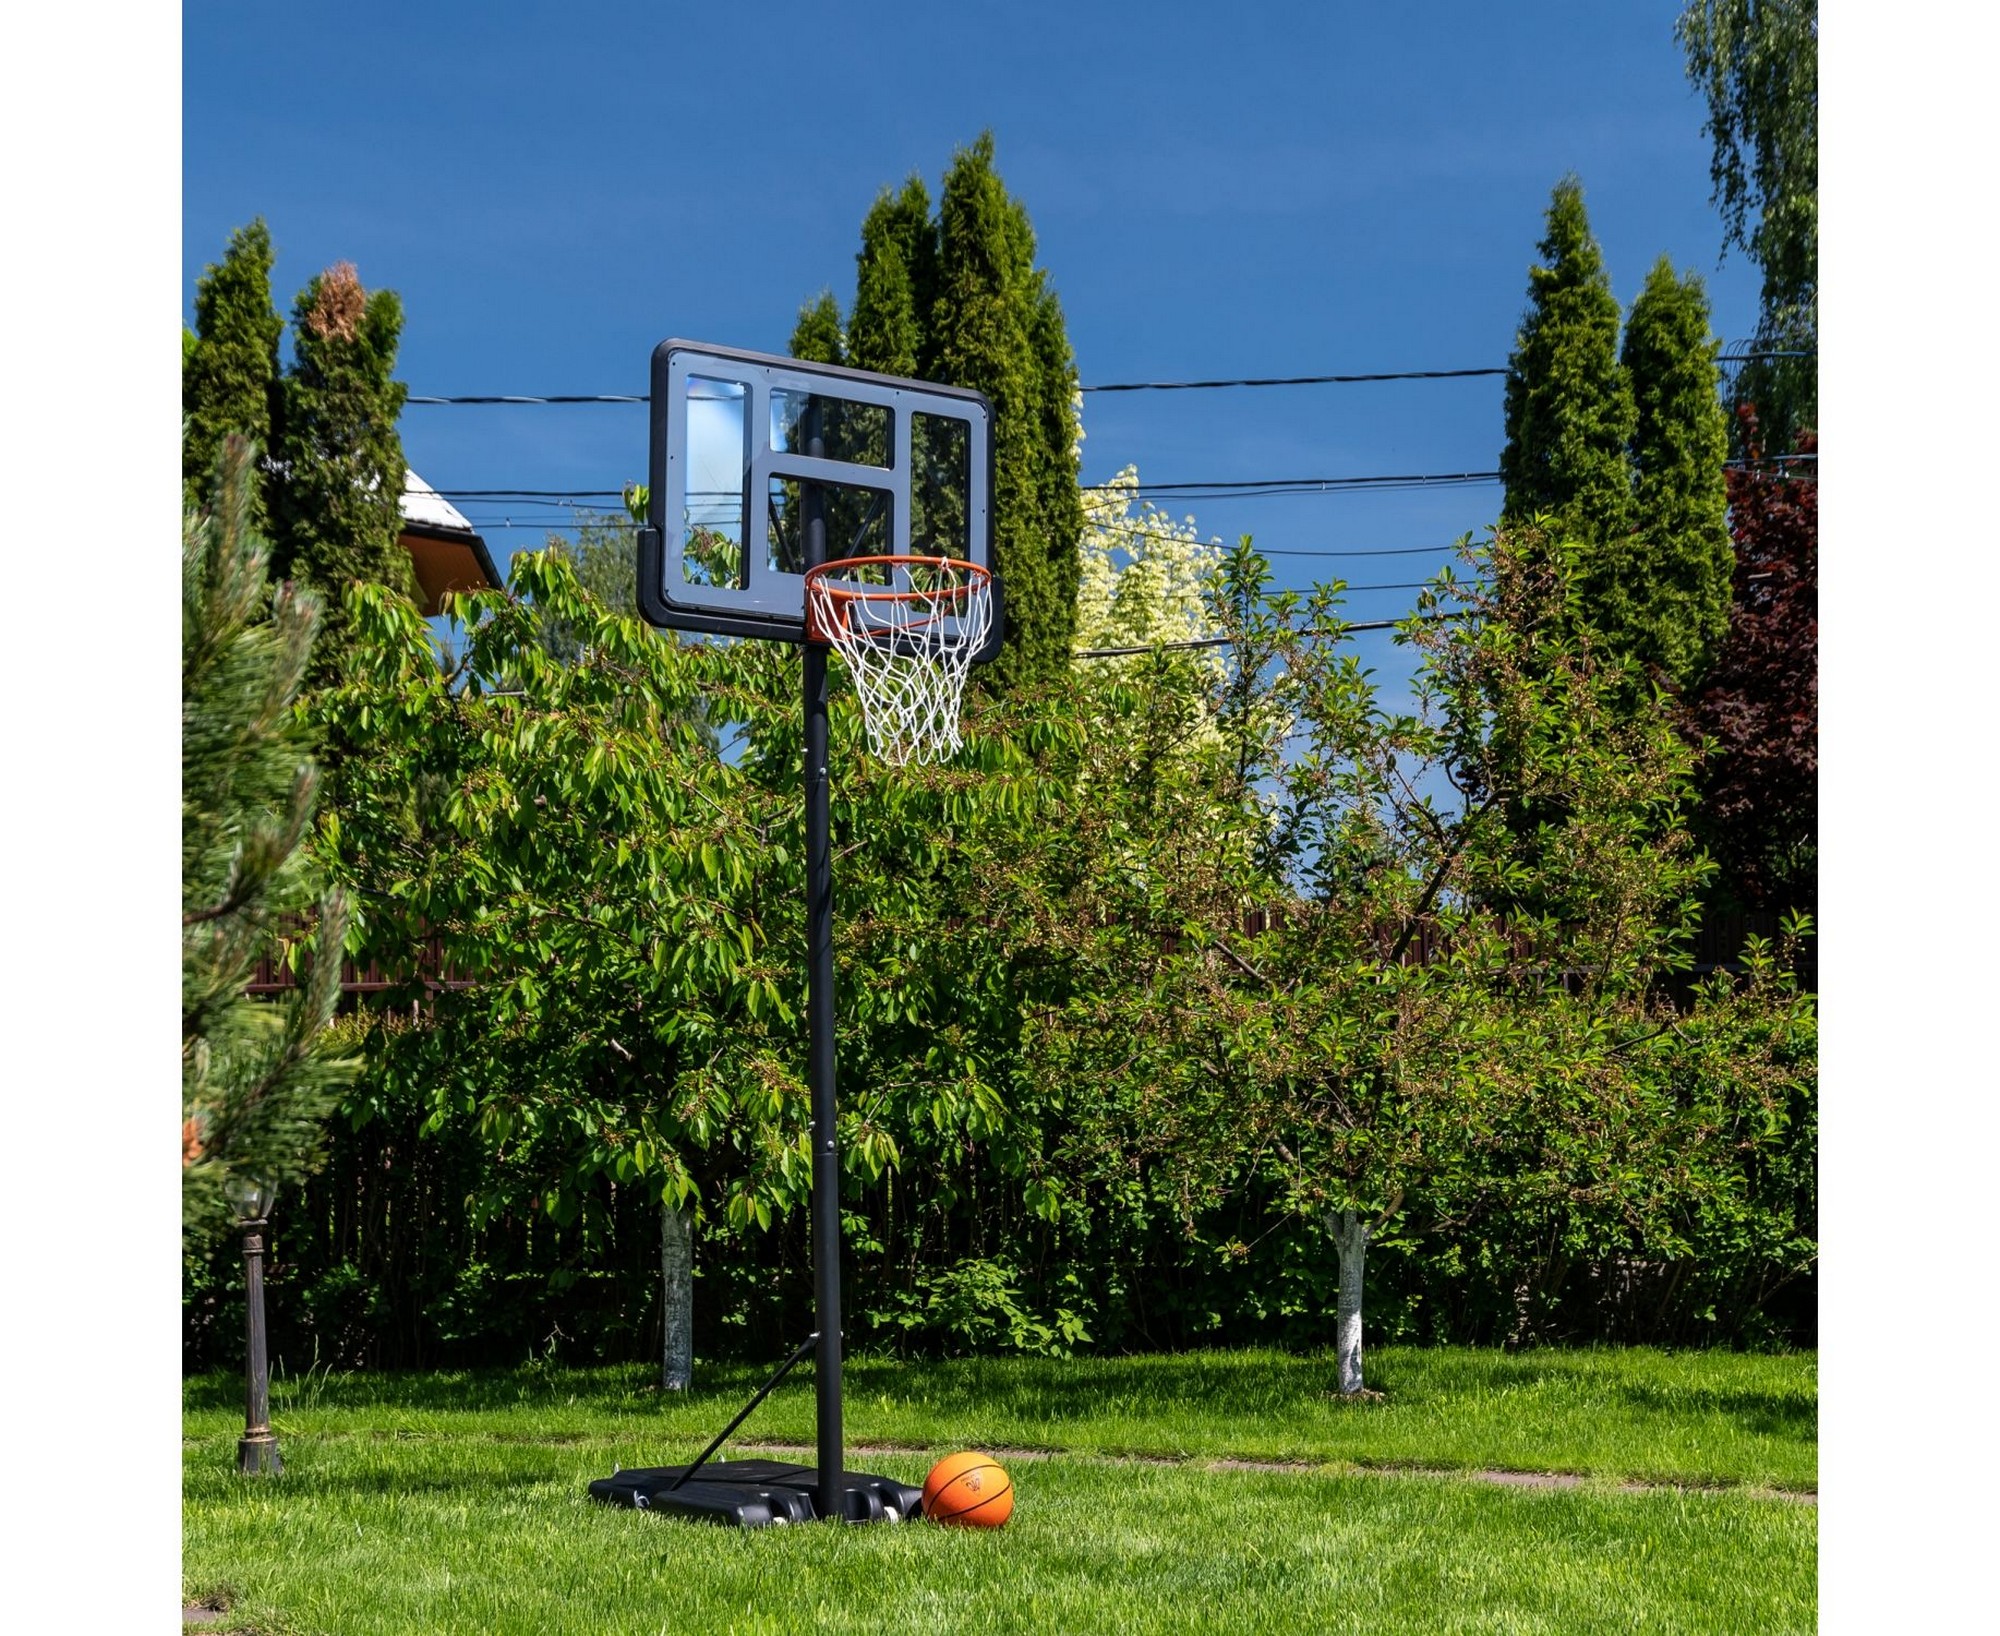 Баскетбольная мобильная стойка DFC STAND44A003 2000_1636